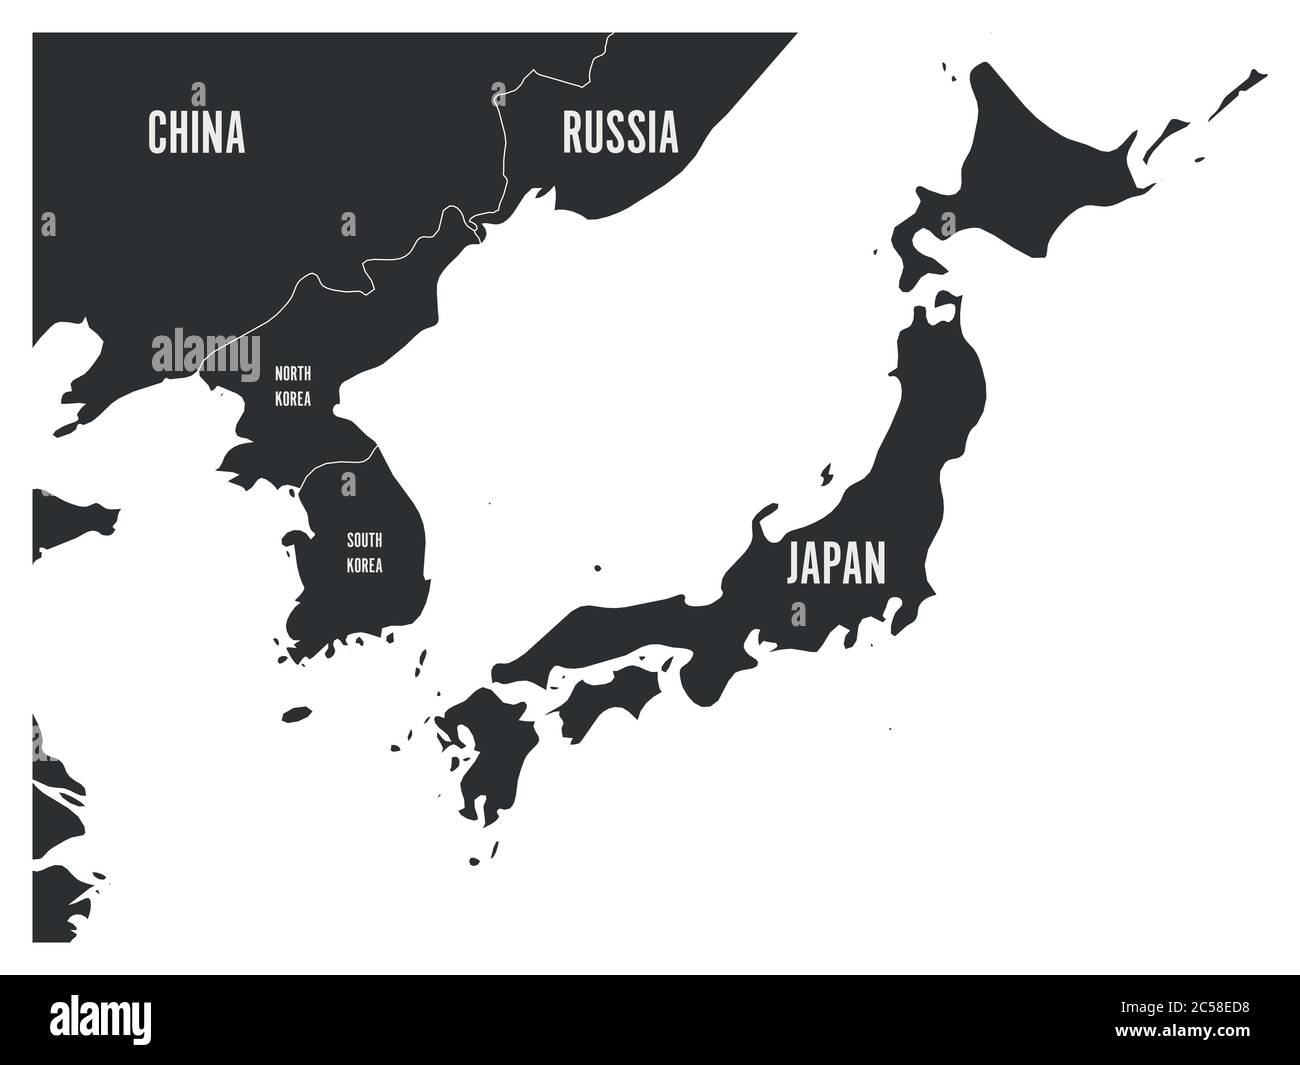 Carte politique de la région coréenne et japonaise, de la Corée du Sud, de la Corée du Nord et du Japon. Carte avec étiquetage sur fond blanc. Illustration vectorielle. Illustration de Vecteur